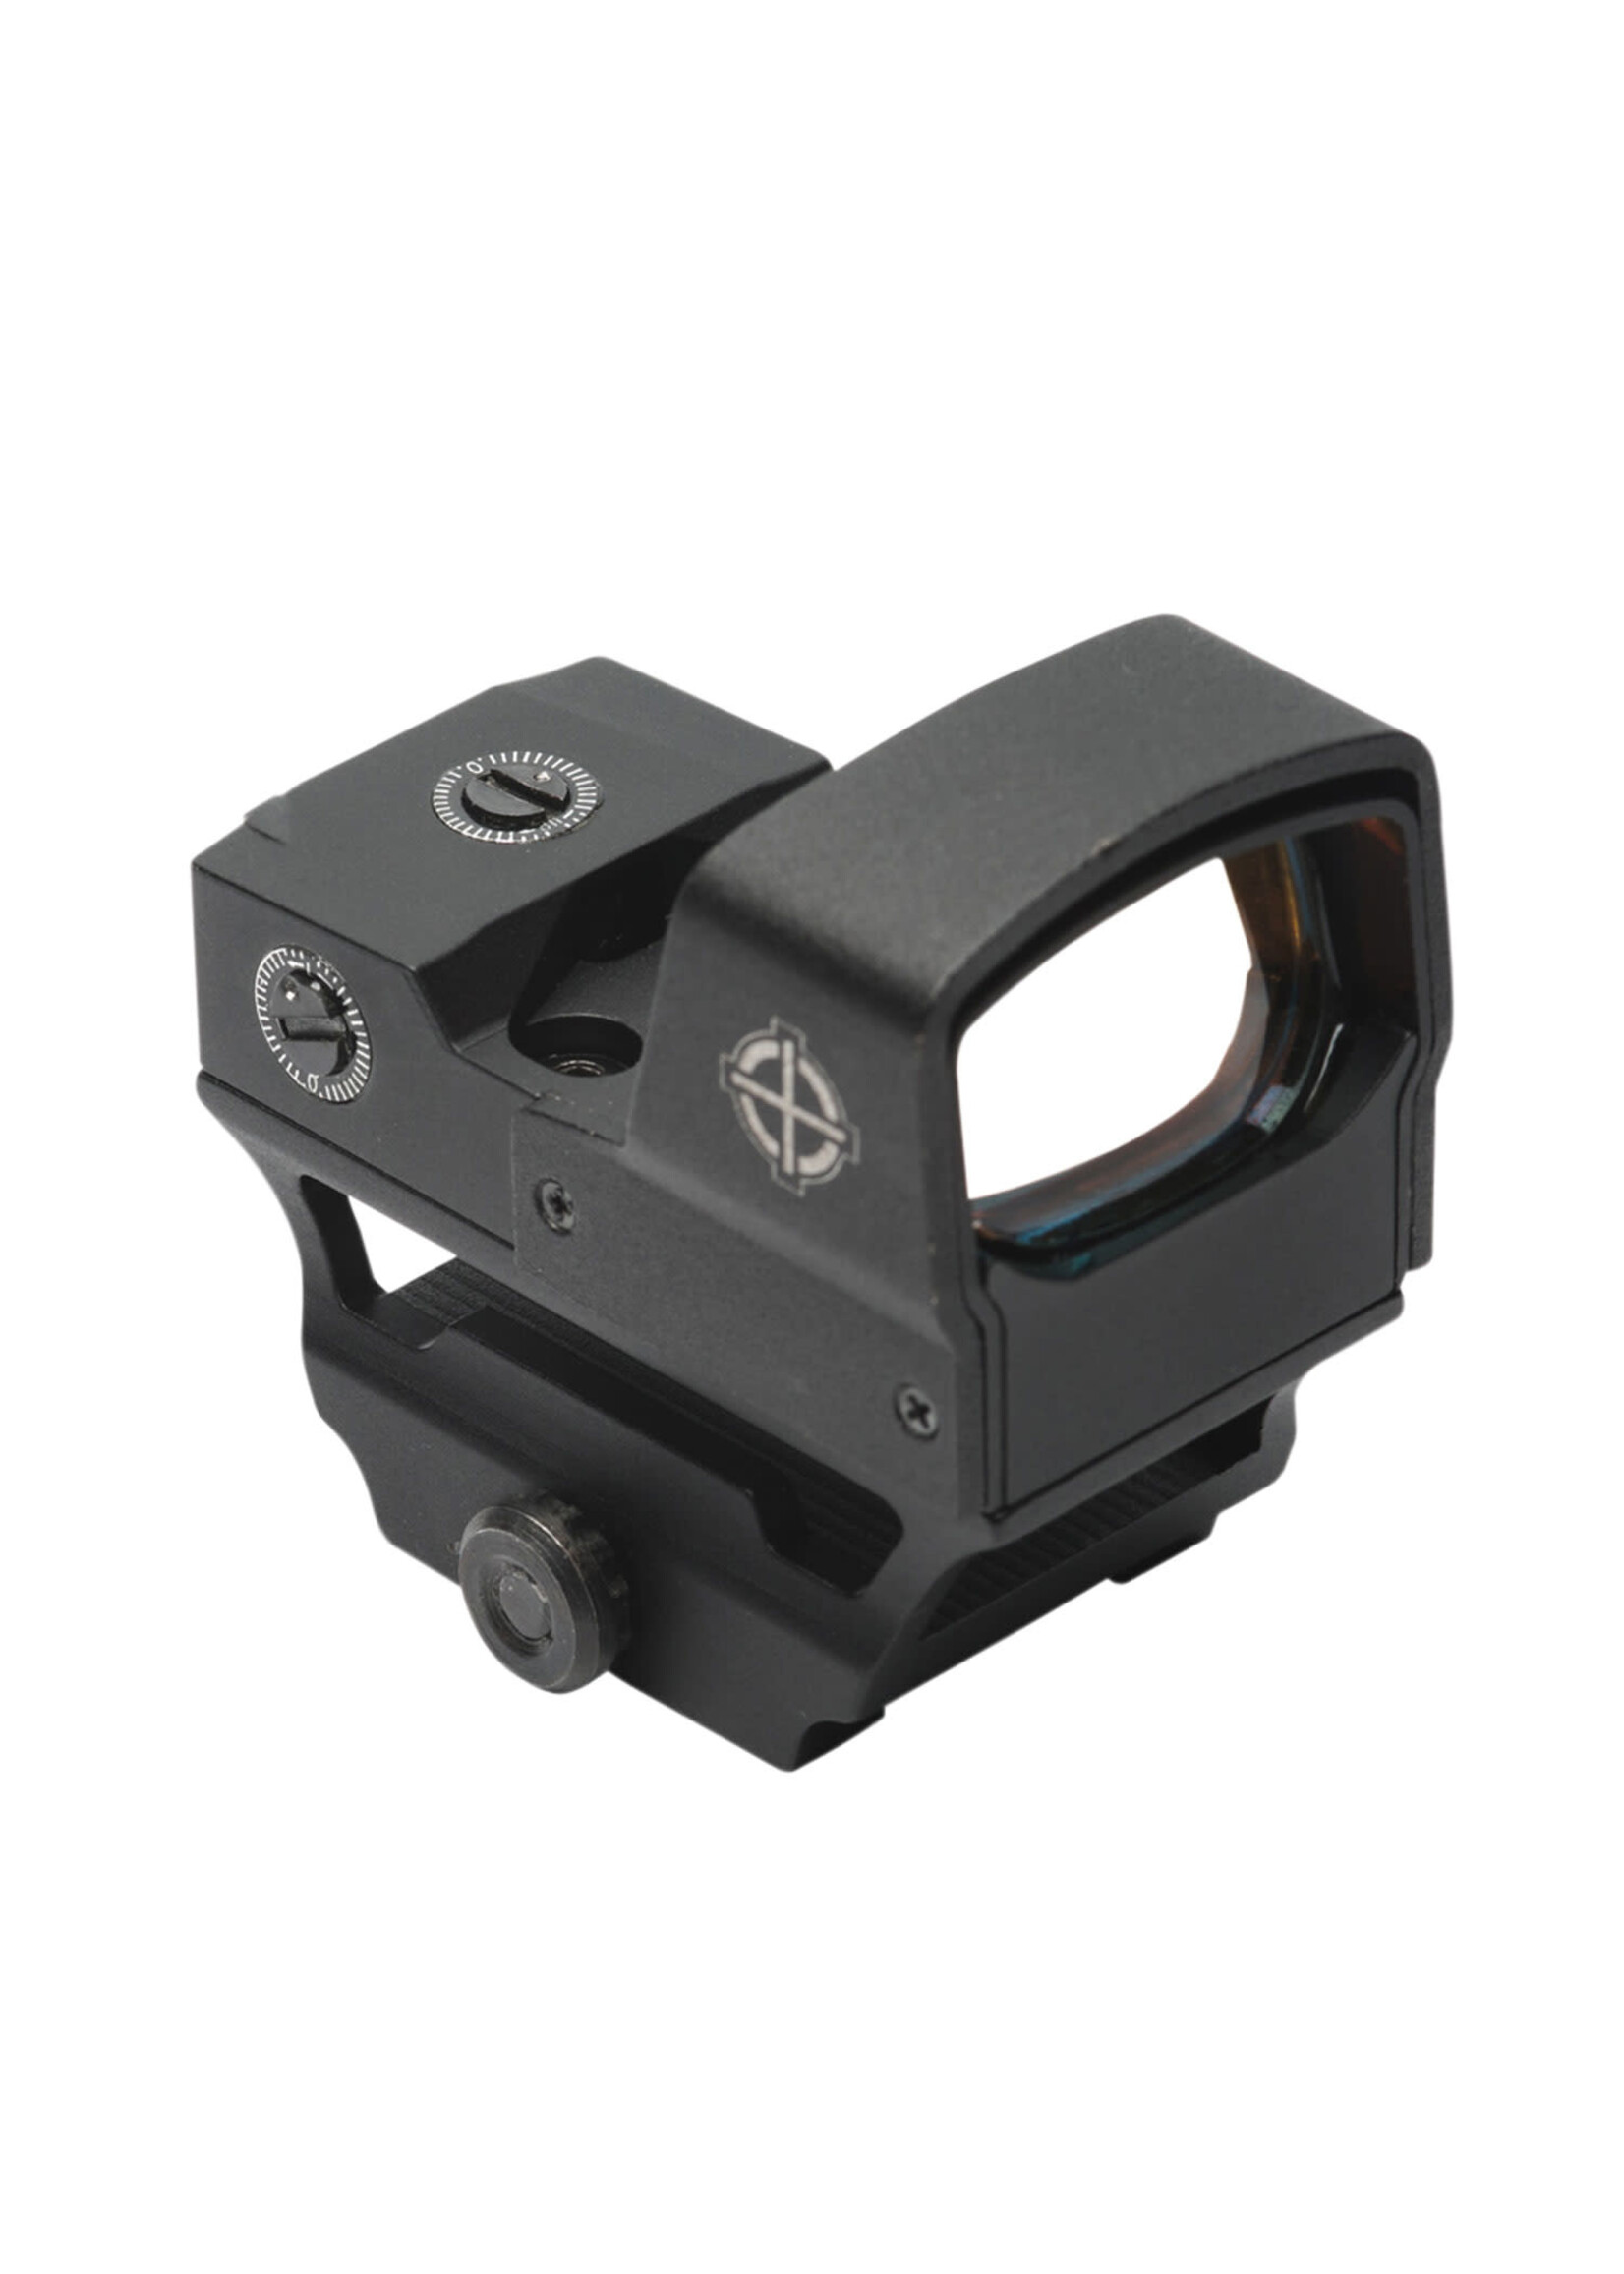 Sightmark Sightmark SM26018 Core Shot Compact Reflex Sight, A-Spec LQD Matte Black 28mm x 18mm 5 MOA Red Dot Reticle